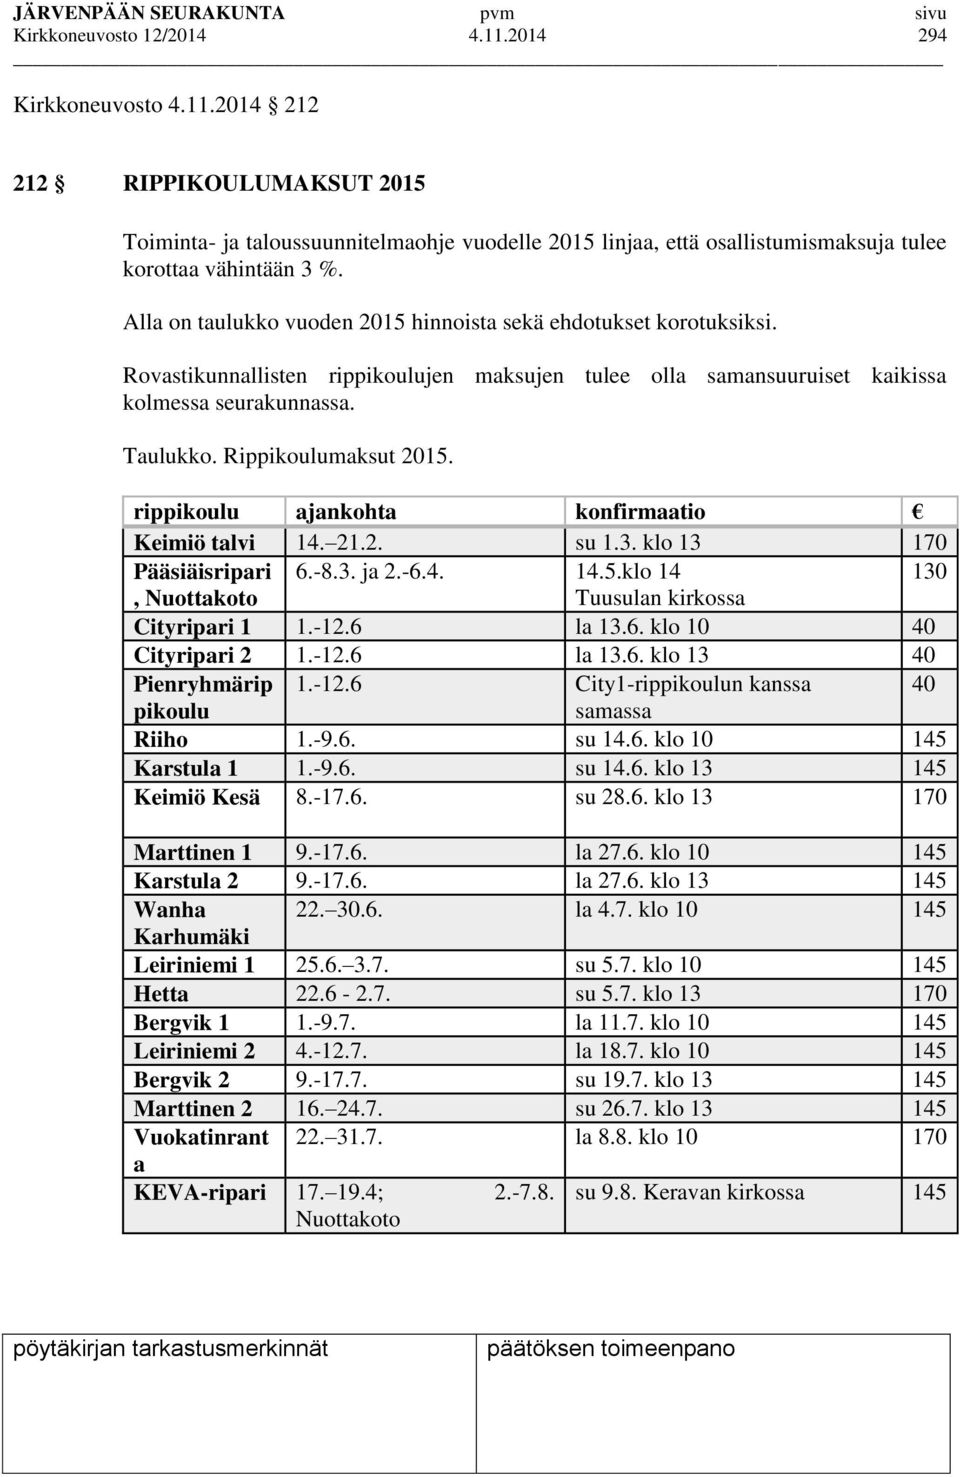 Rippikoulumaksut 2015. rippikoulu ajankohta konfirmaatio Keimiö talvi 14. 21.2. su 1.3. klo 13 170 Pääsiäisripari 6.-8.3. ja 2.-6.4. 14.5.klo 14 130, Nuottakoto Tuusulan kirkossa Cityripari 1 1.-12.